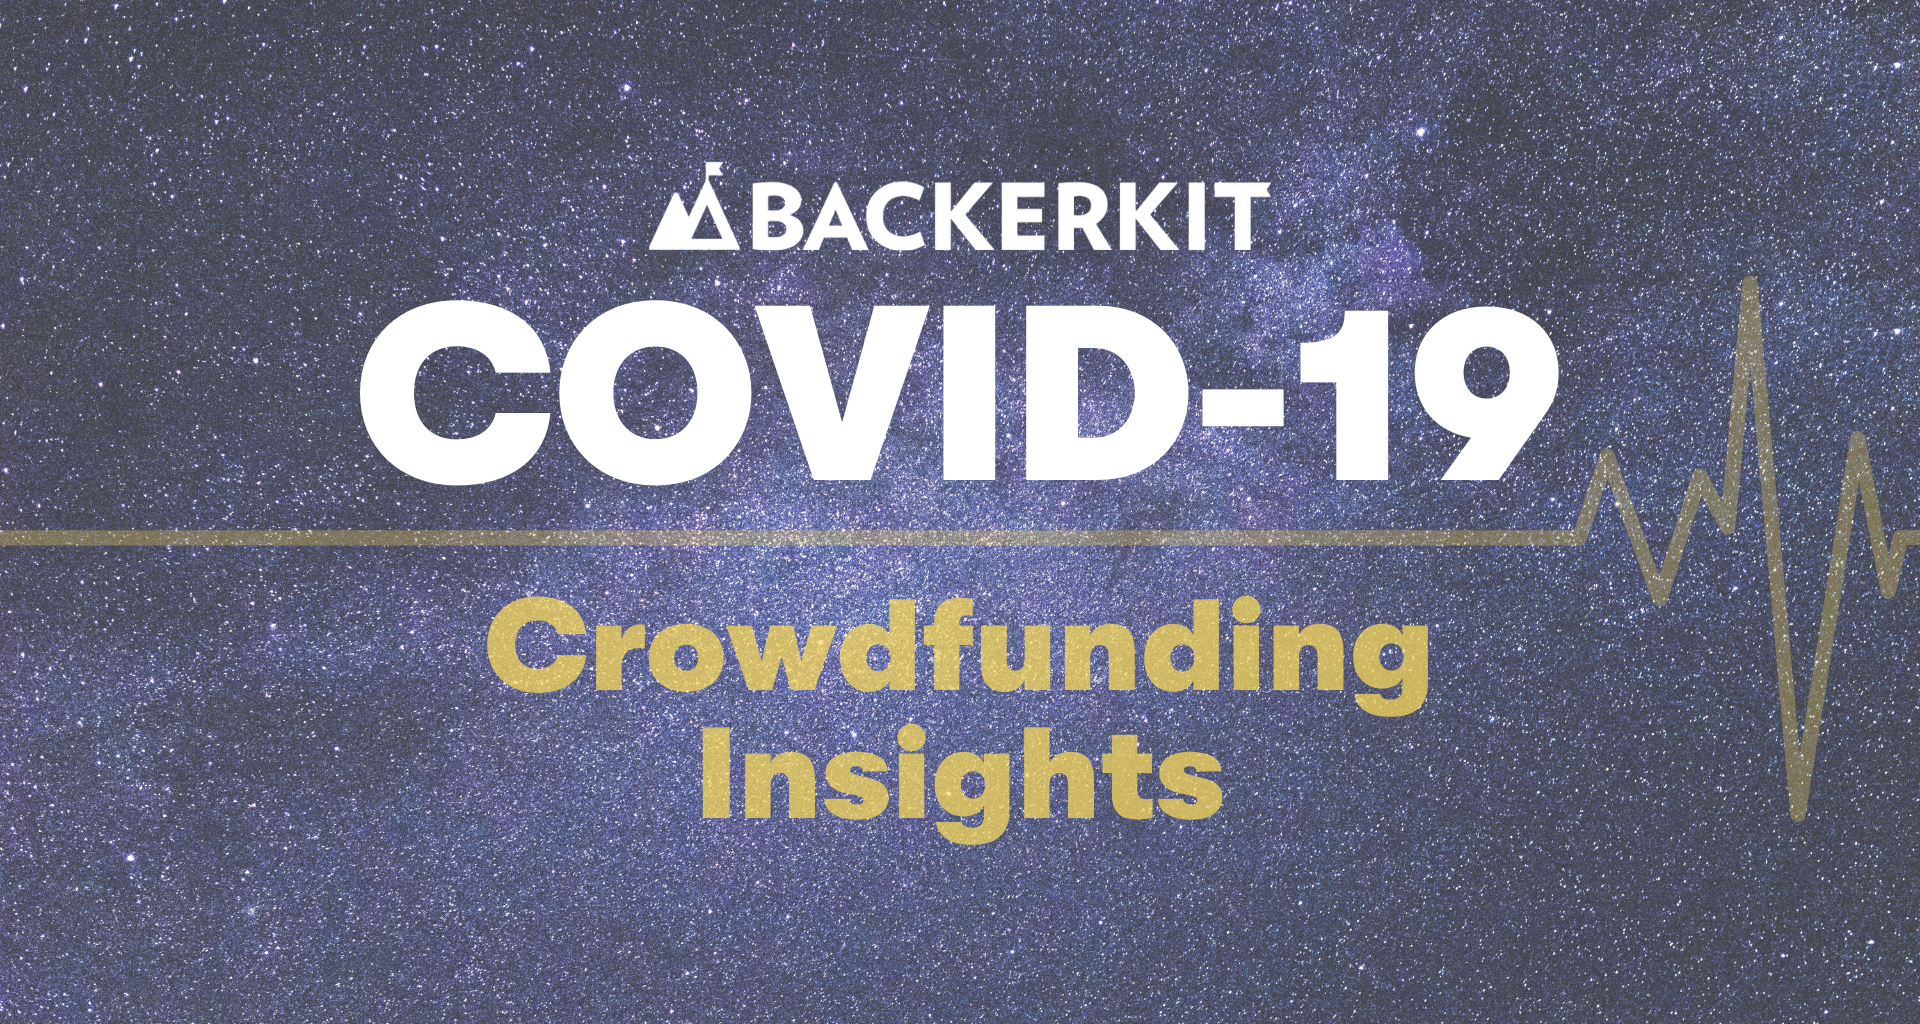 BackerKit-COVID-19-Crowdfunding